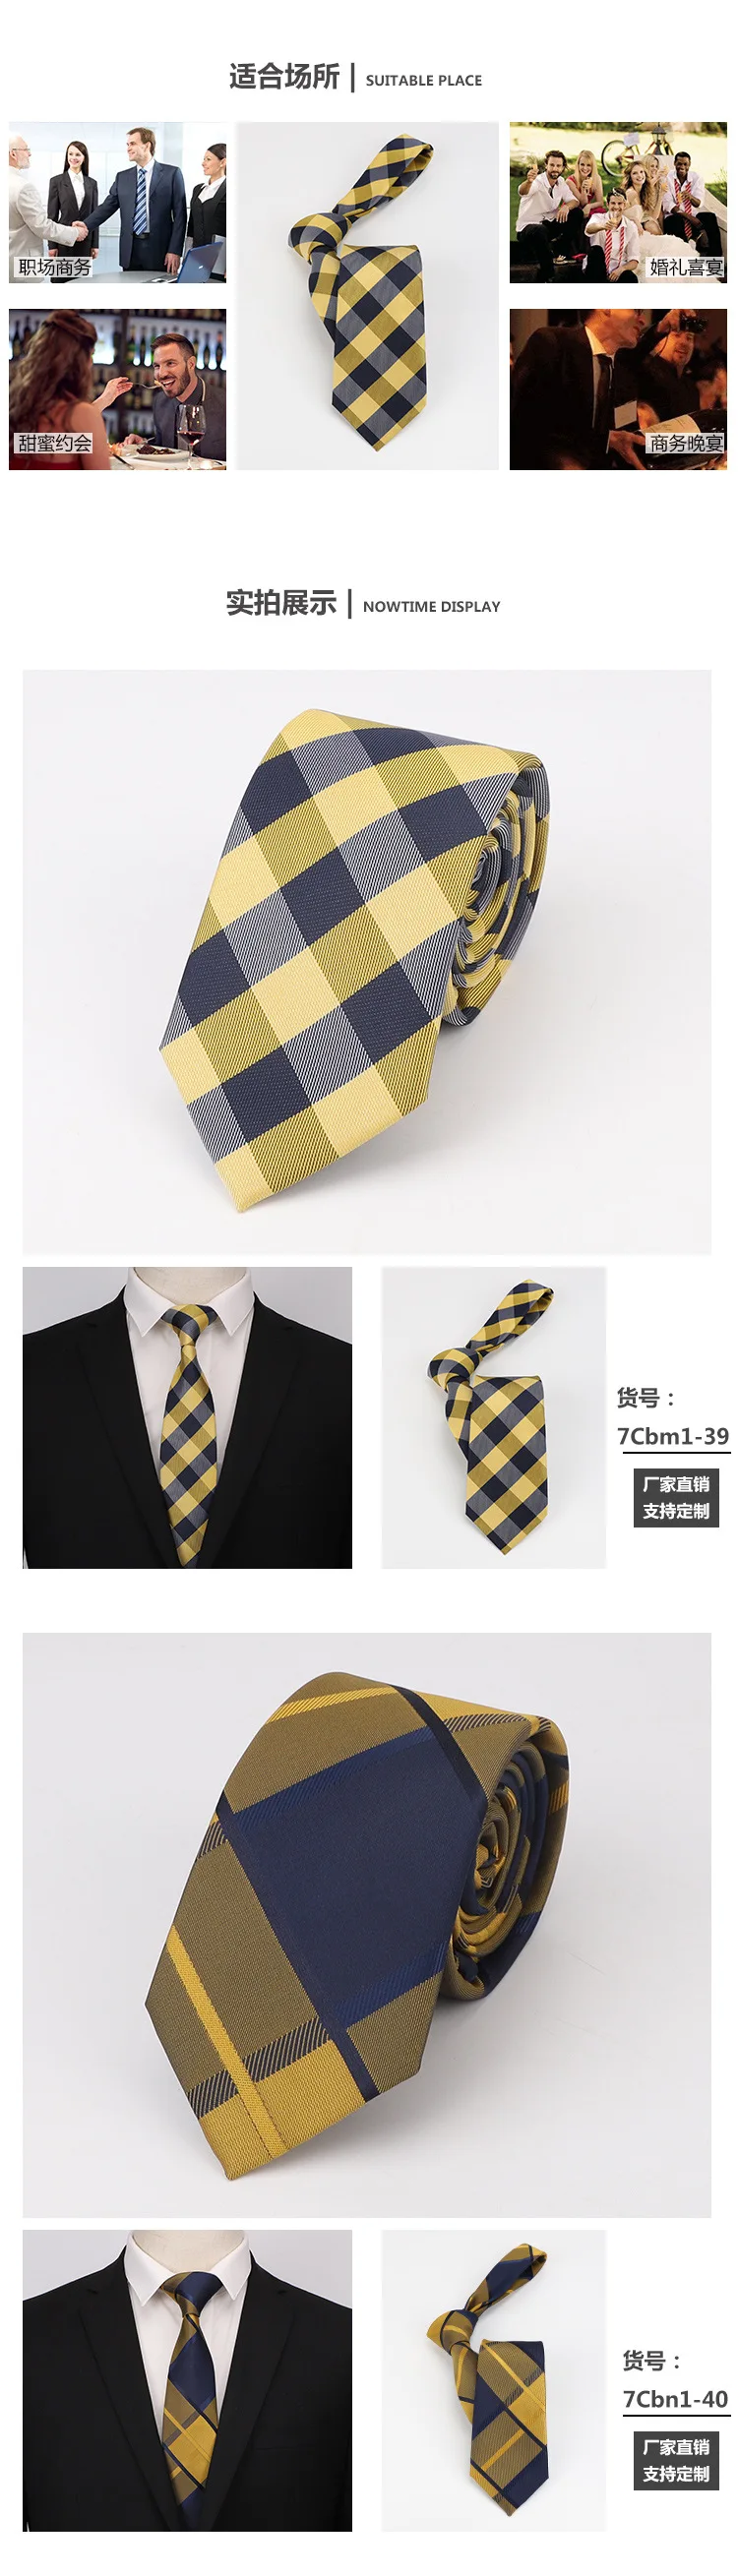 Популярный Галстук с узором "огурцы" для мужчин шелковые галстуки дизайнерские модные мужские галстуки 8 см темно-синие и красные свадебные галстуки в полоску